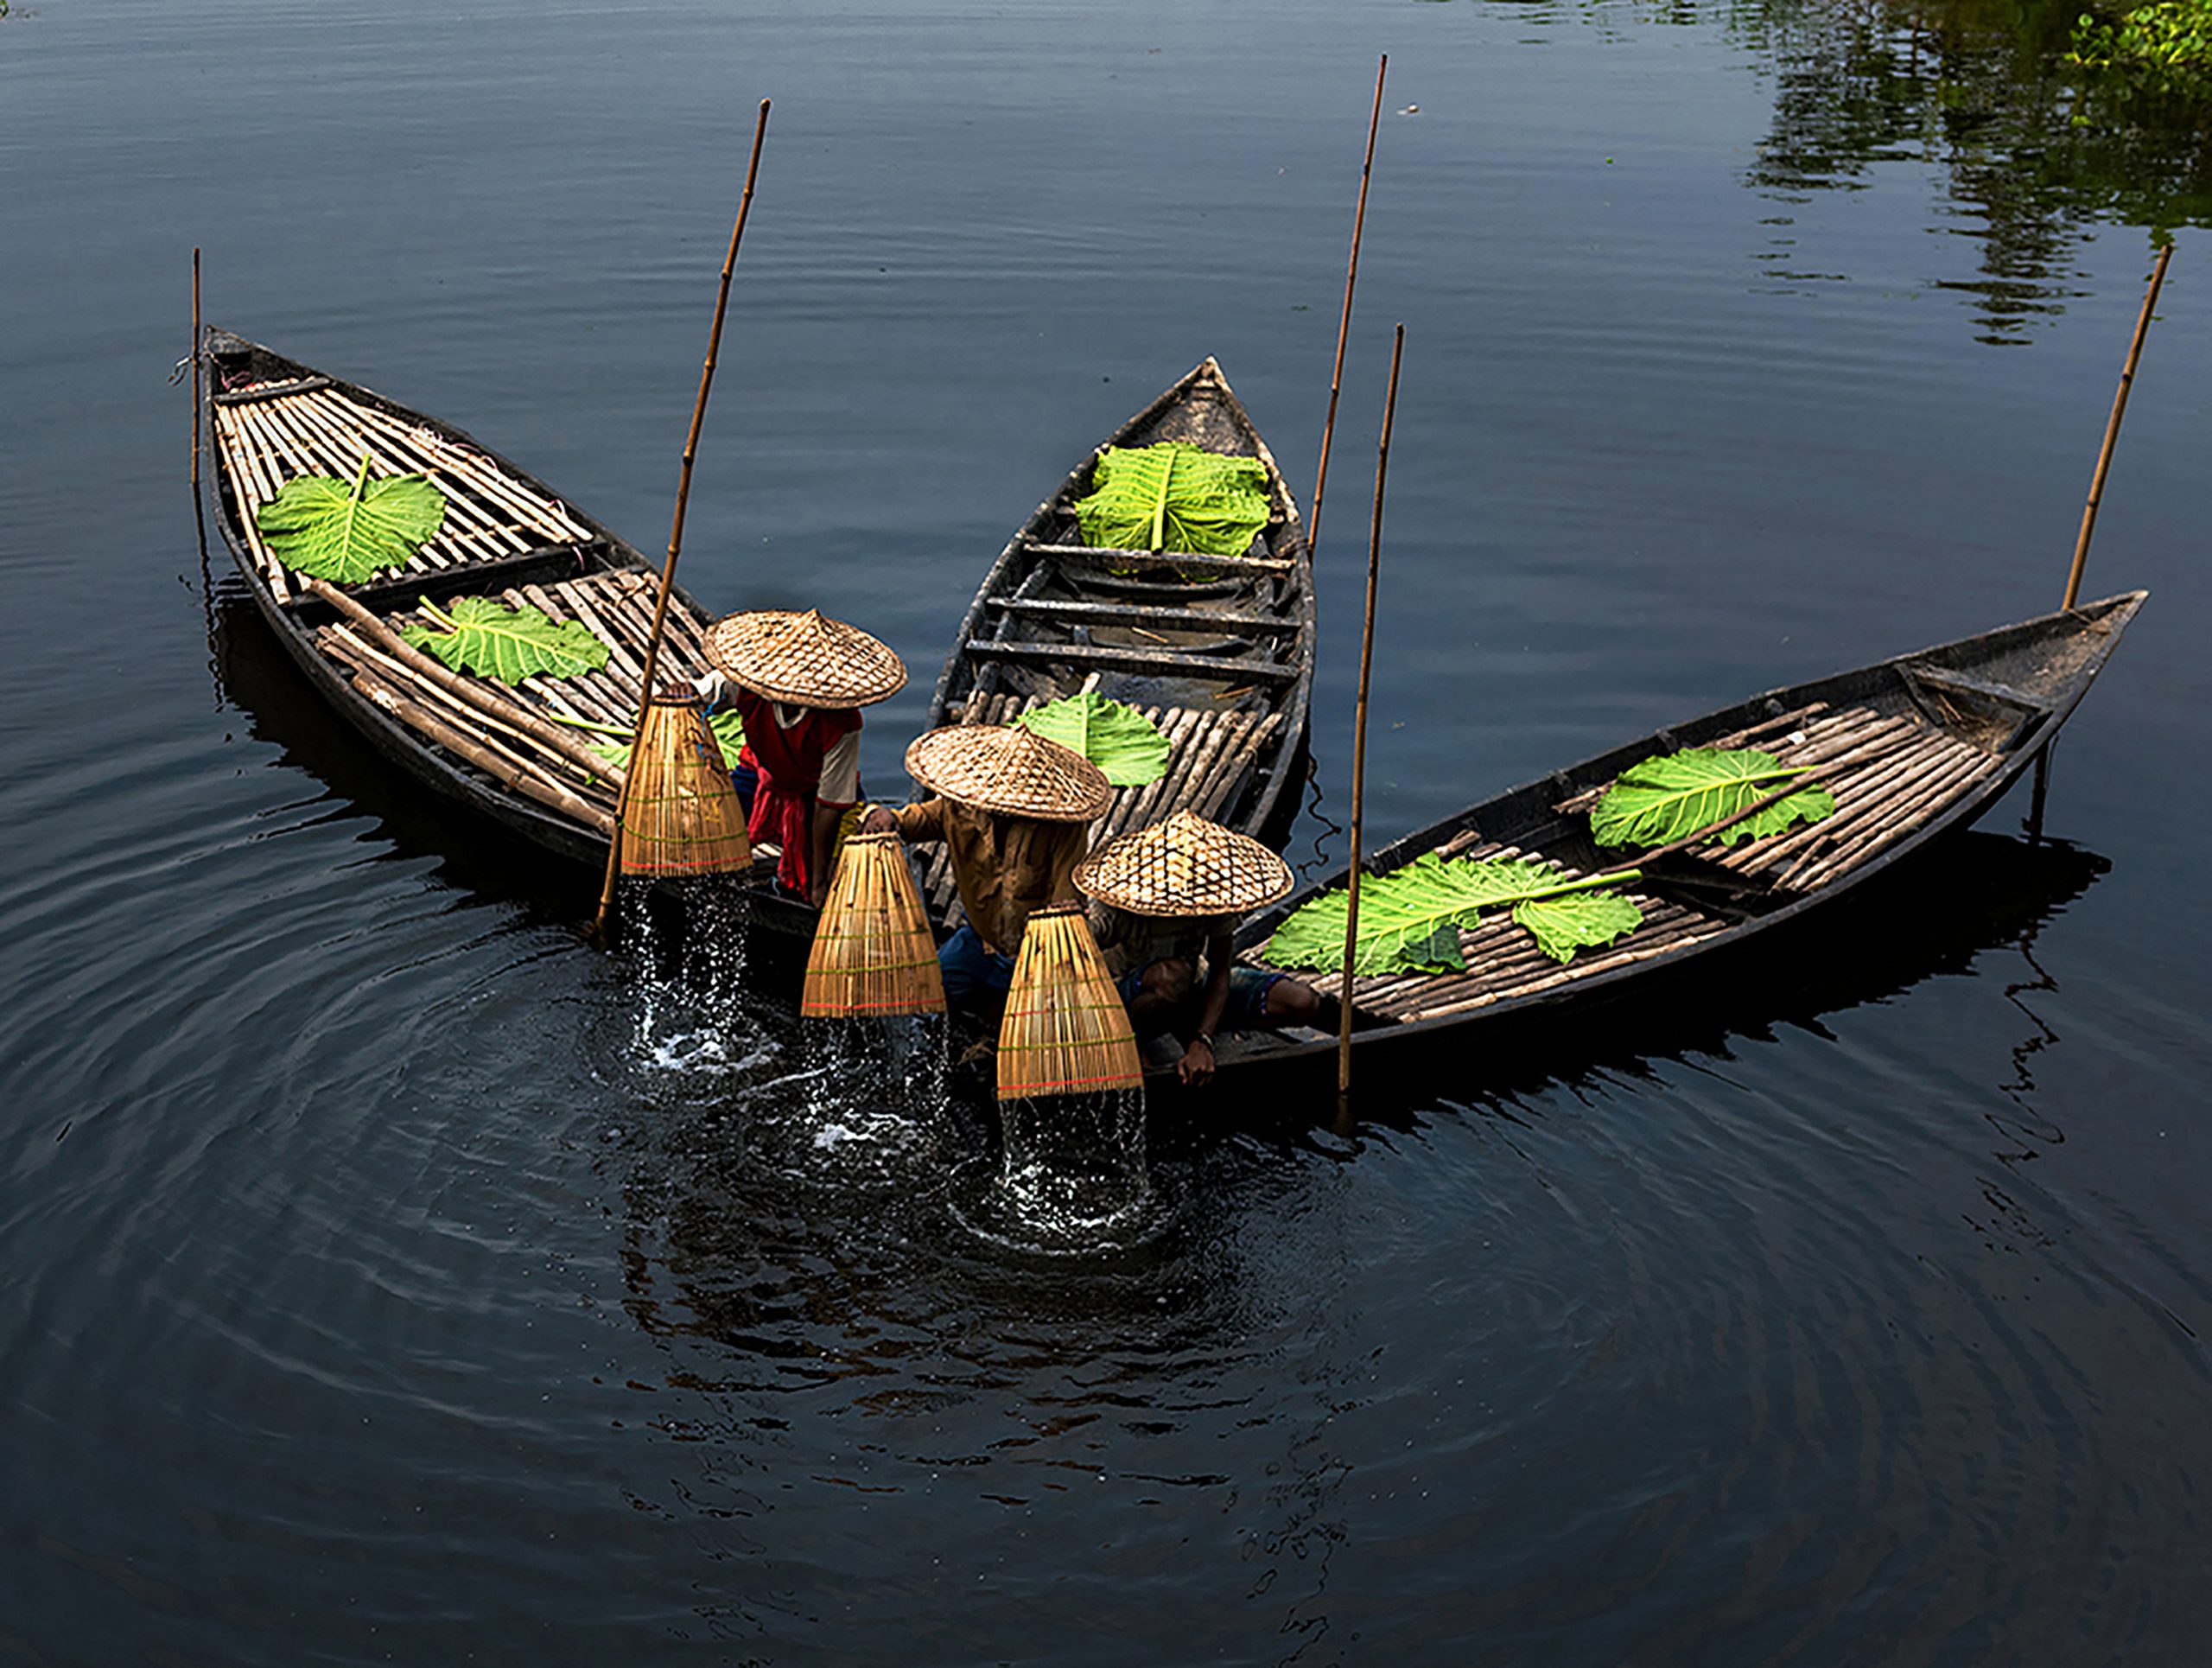 Fishermen washing their wooden basket